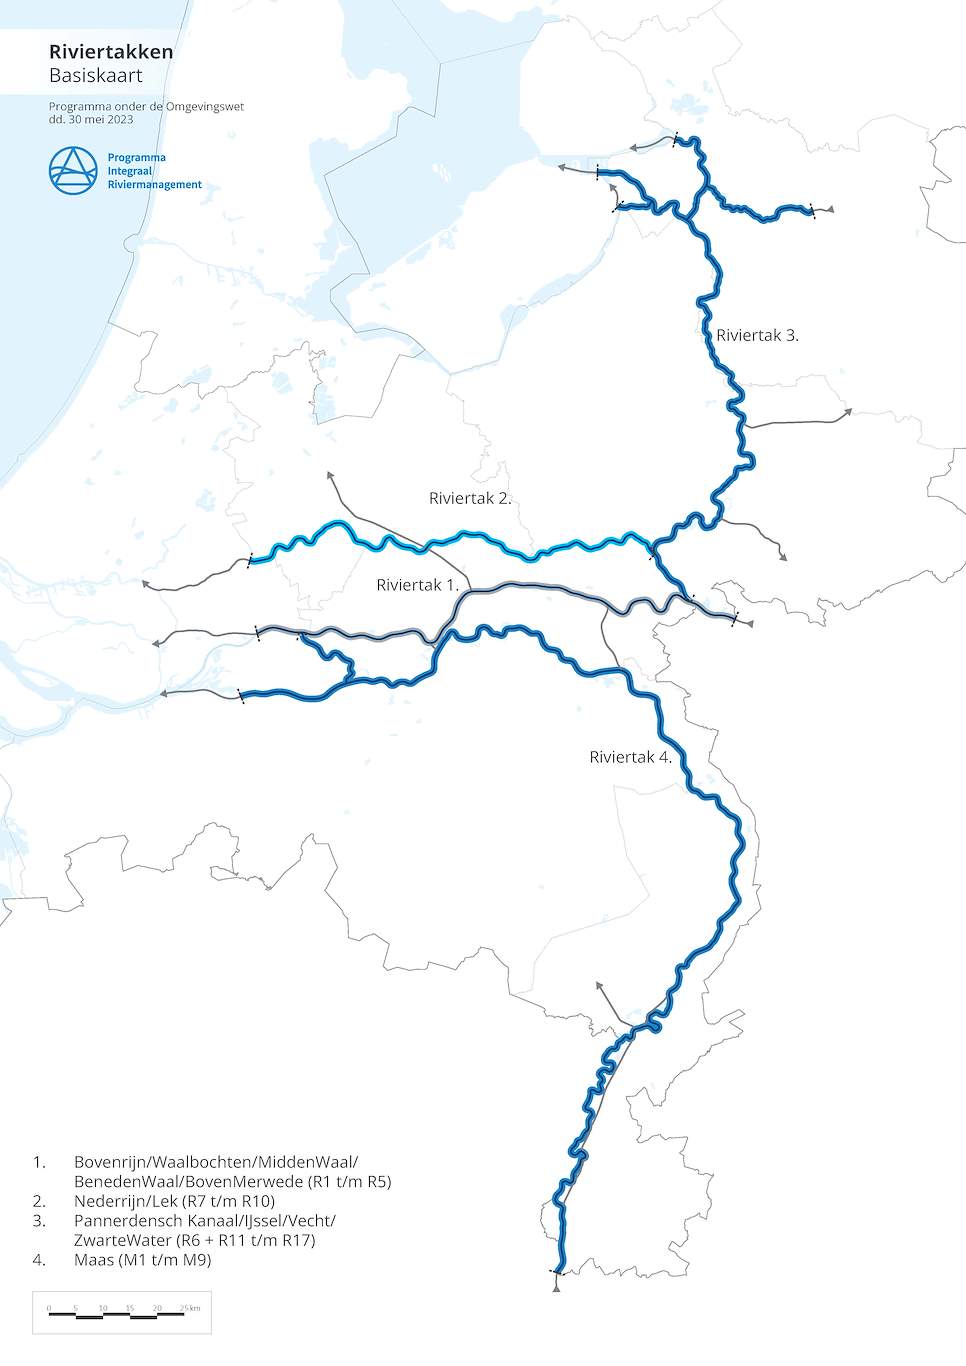 Deze afbeelding laat de vier aanwezige riviertakken zien. Het gaat om de riviertakken IJssel, Nederrijn, Waal en Maas.